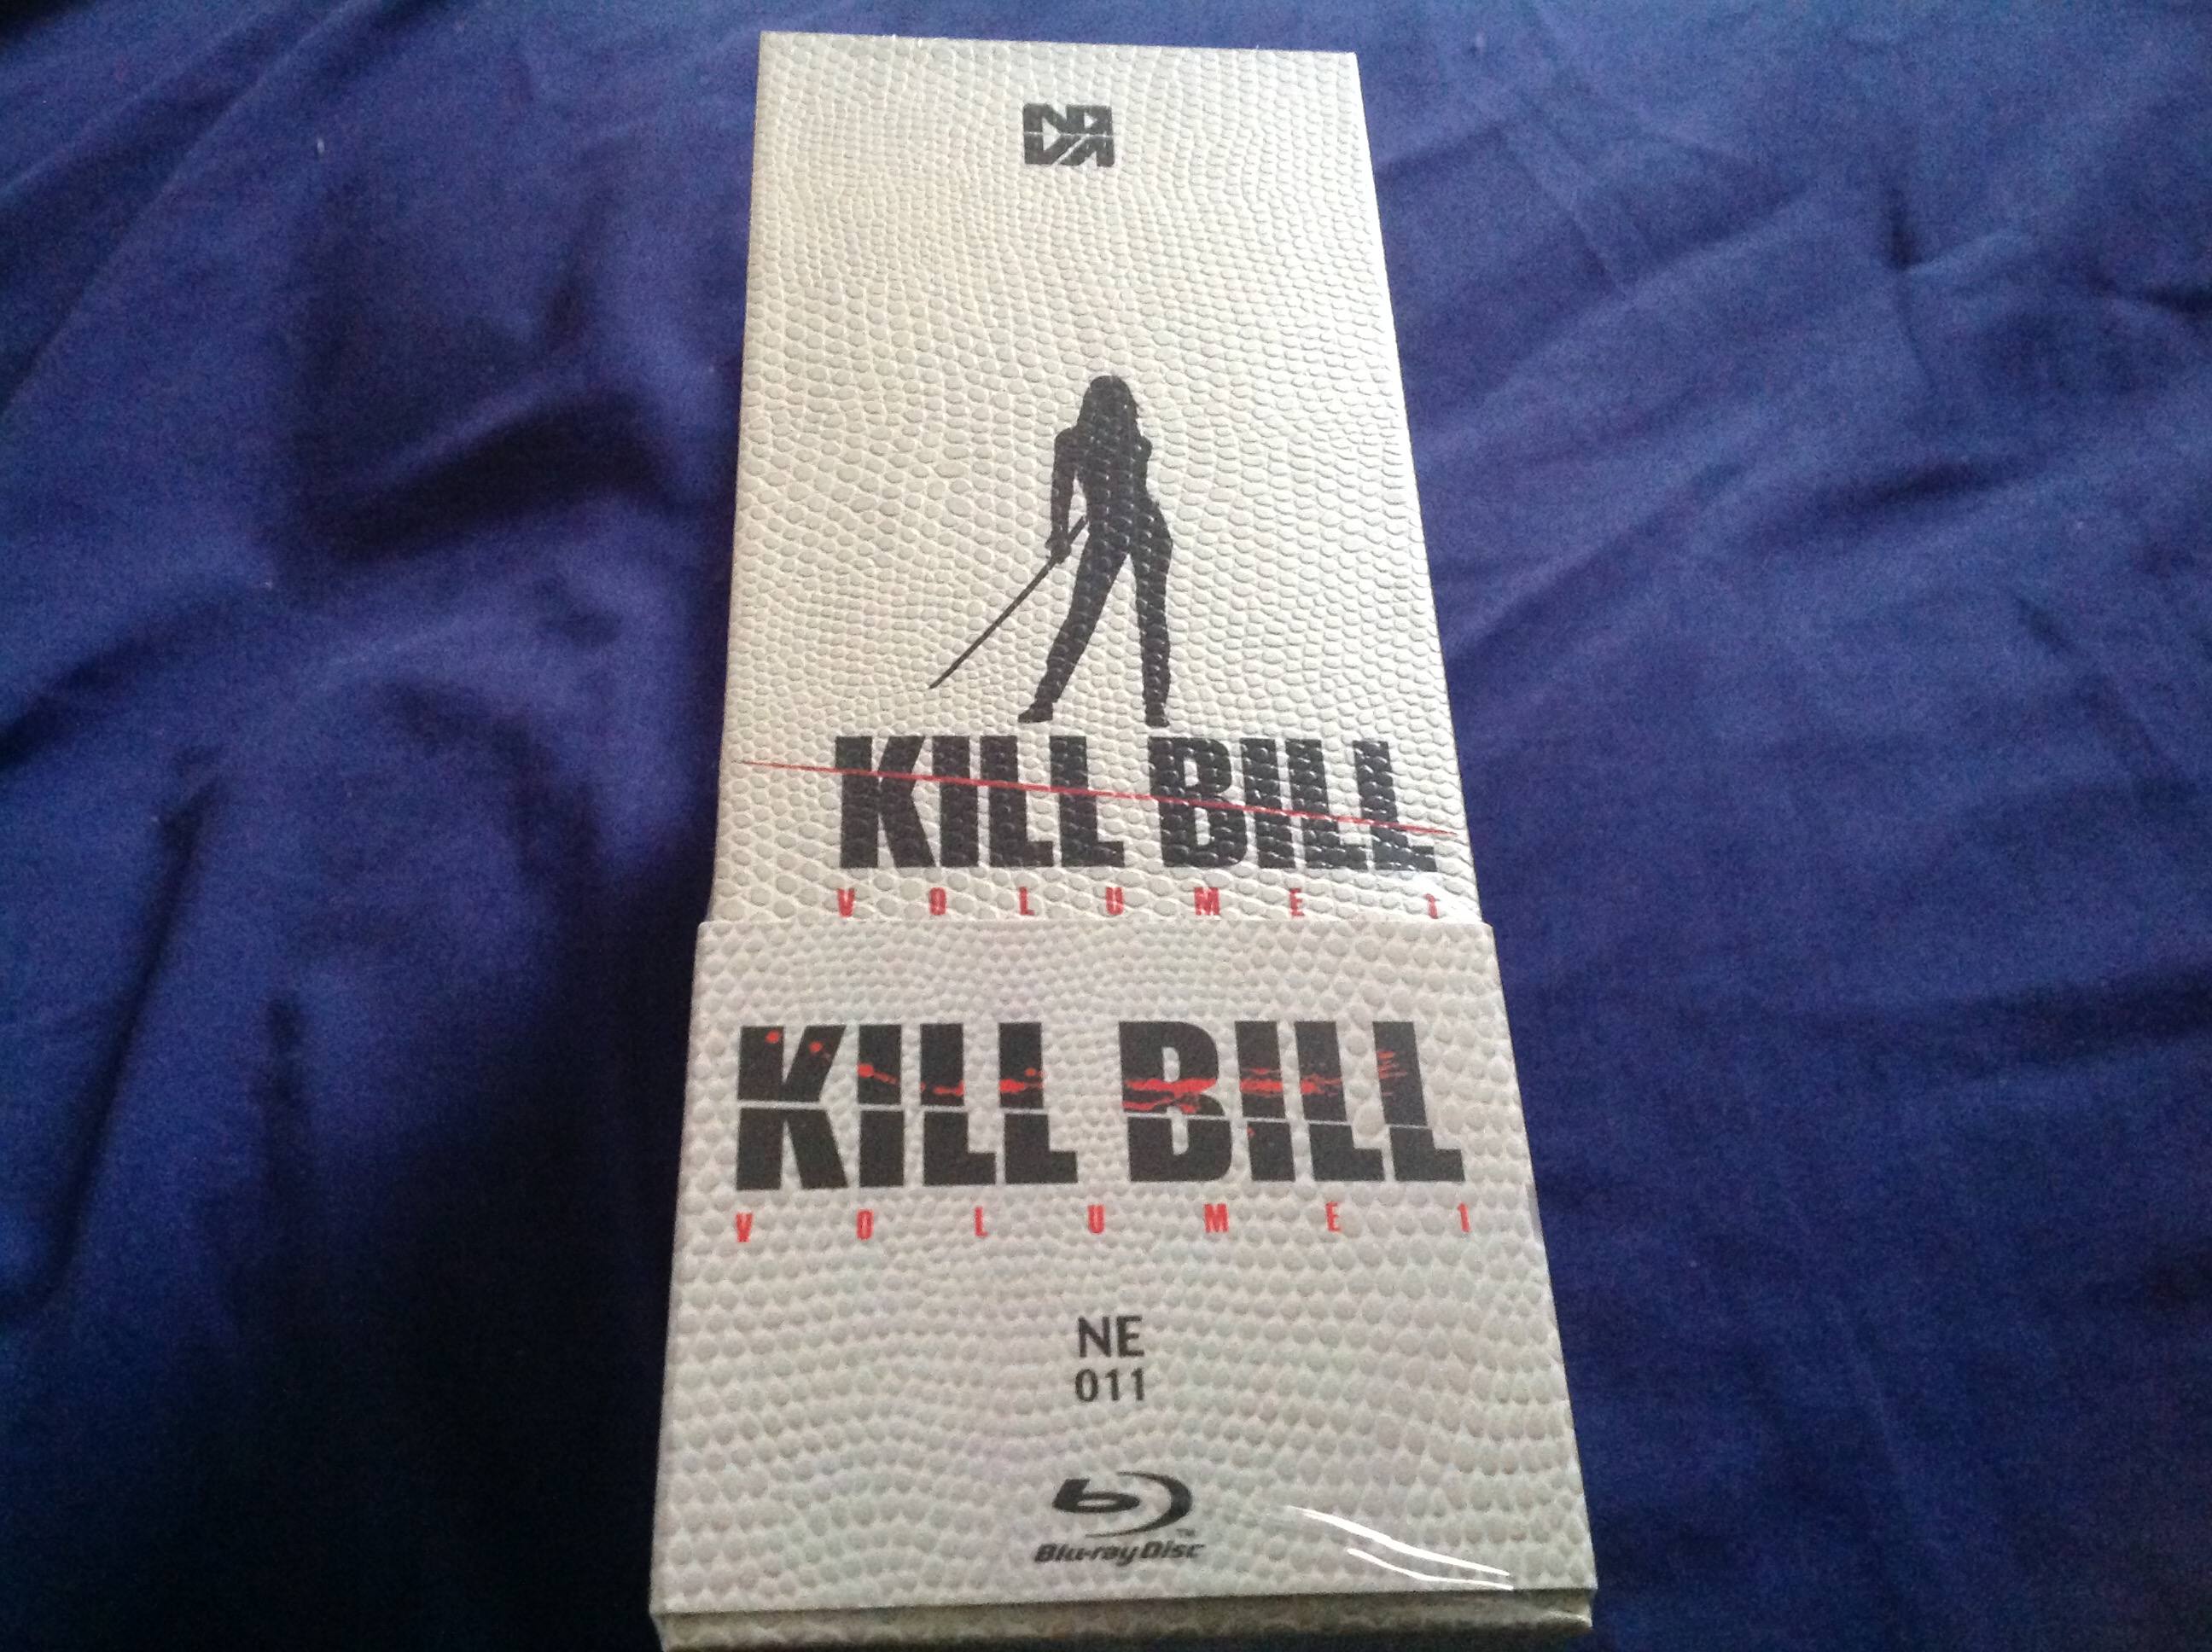 Kill bill nova side